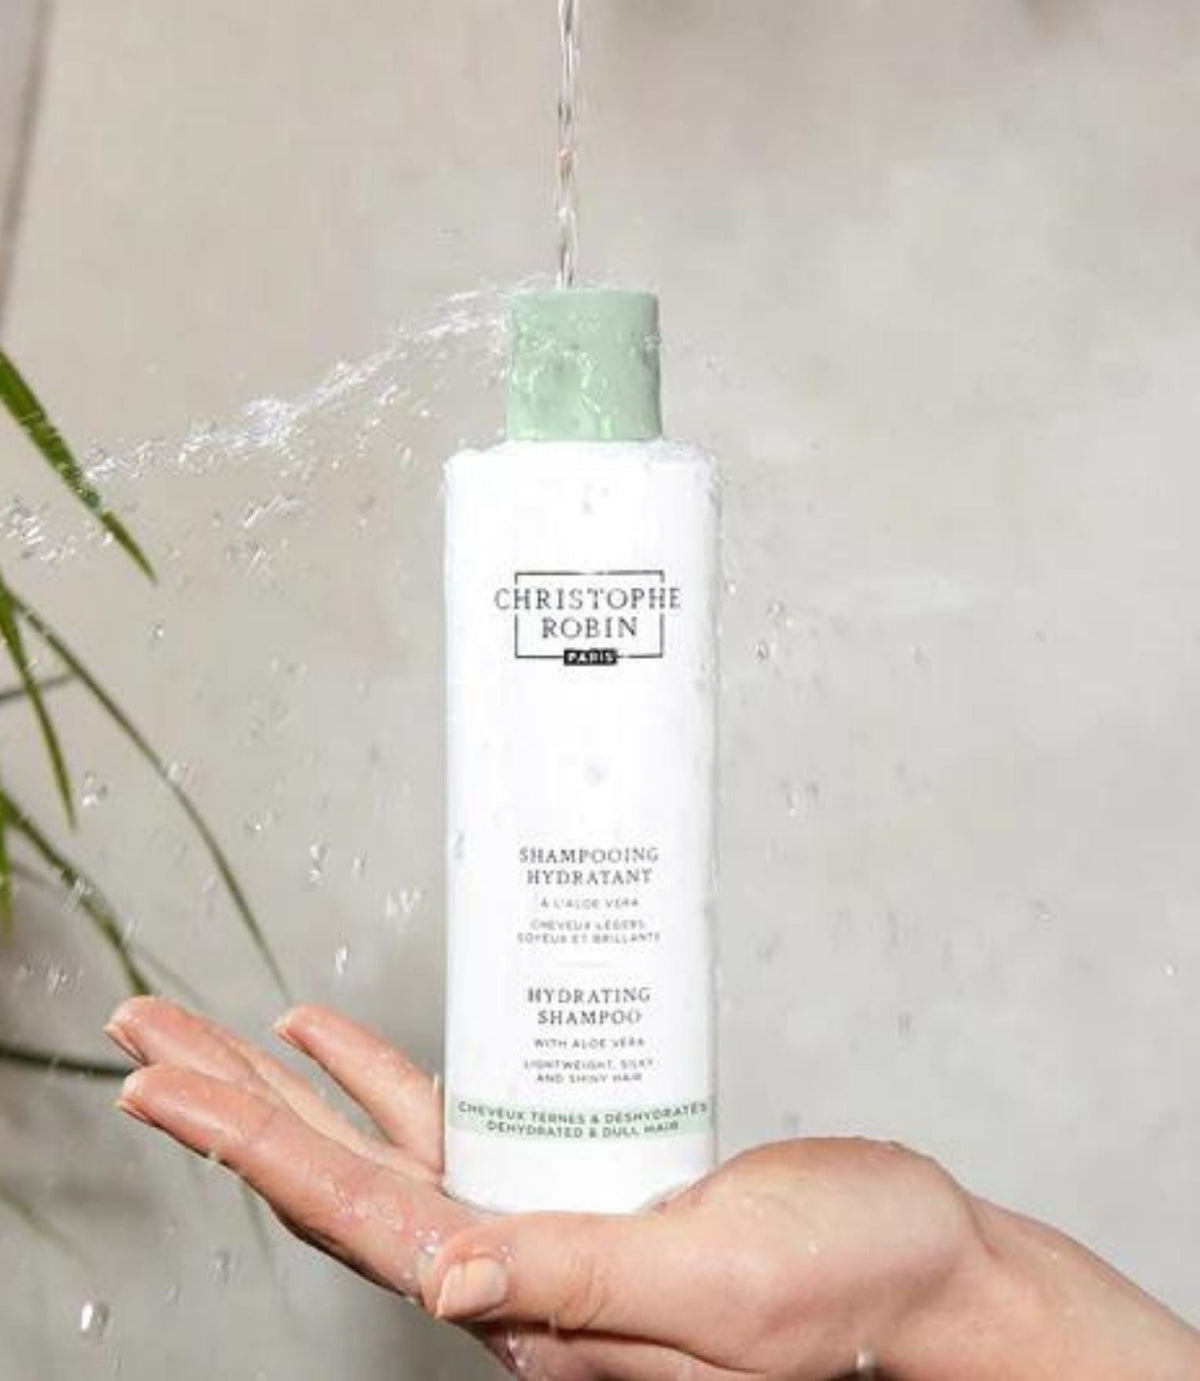 Hydrating Shampoo with Aloe Vera 250ml